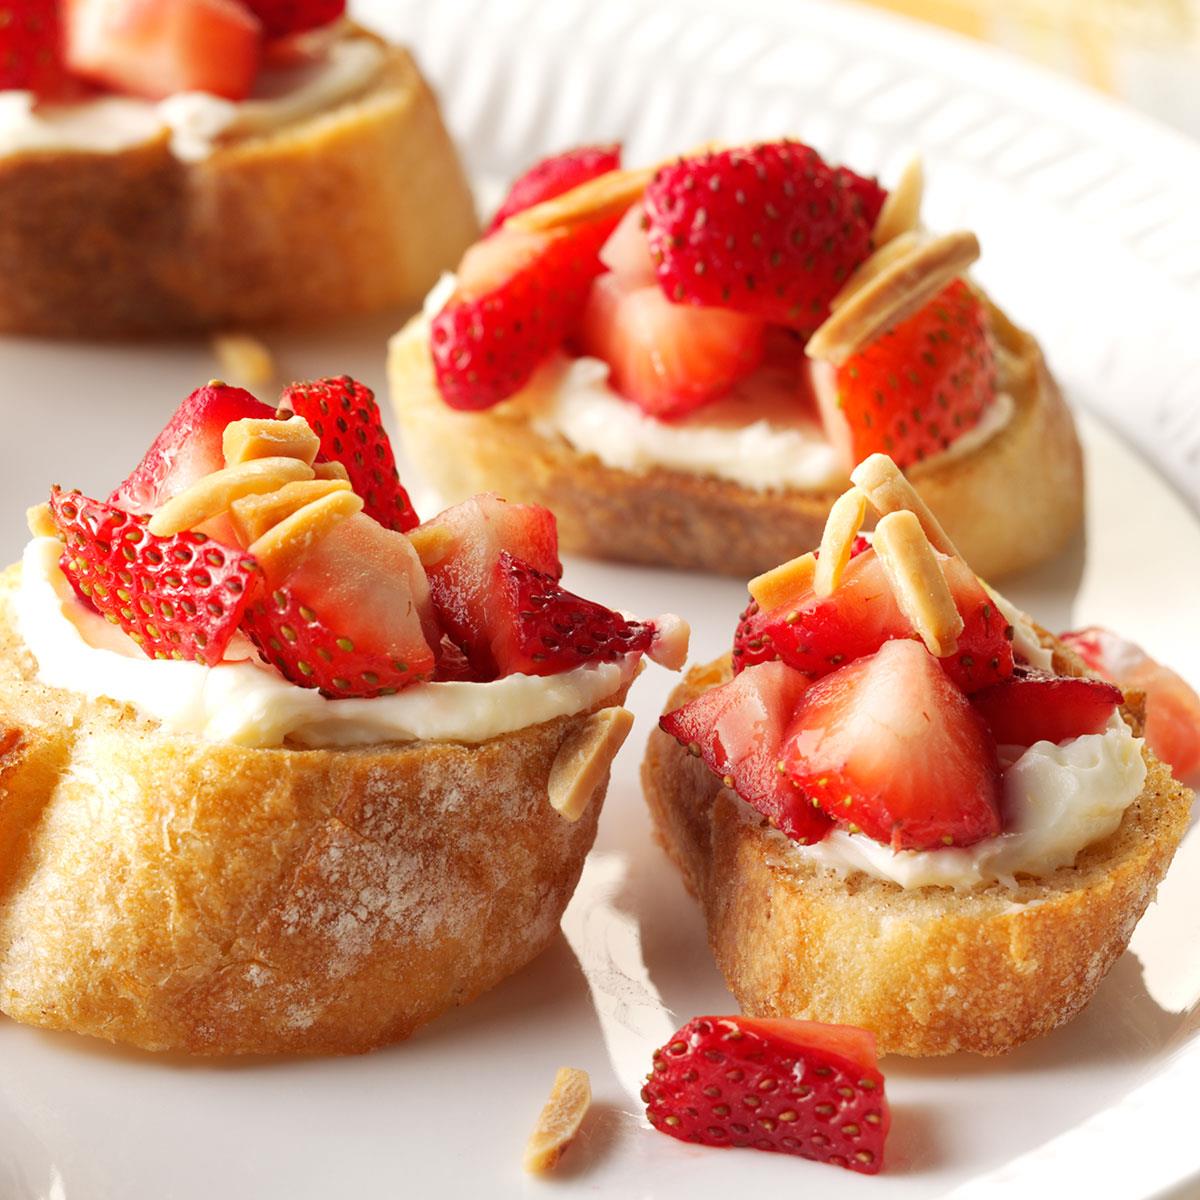 Strawberry and Cream Bruschetta image